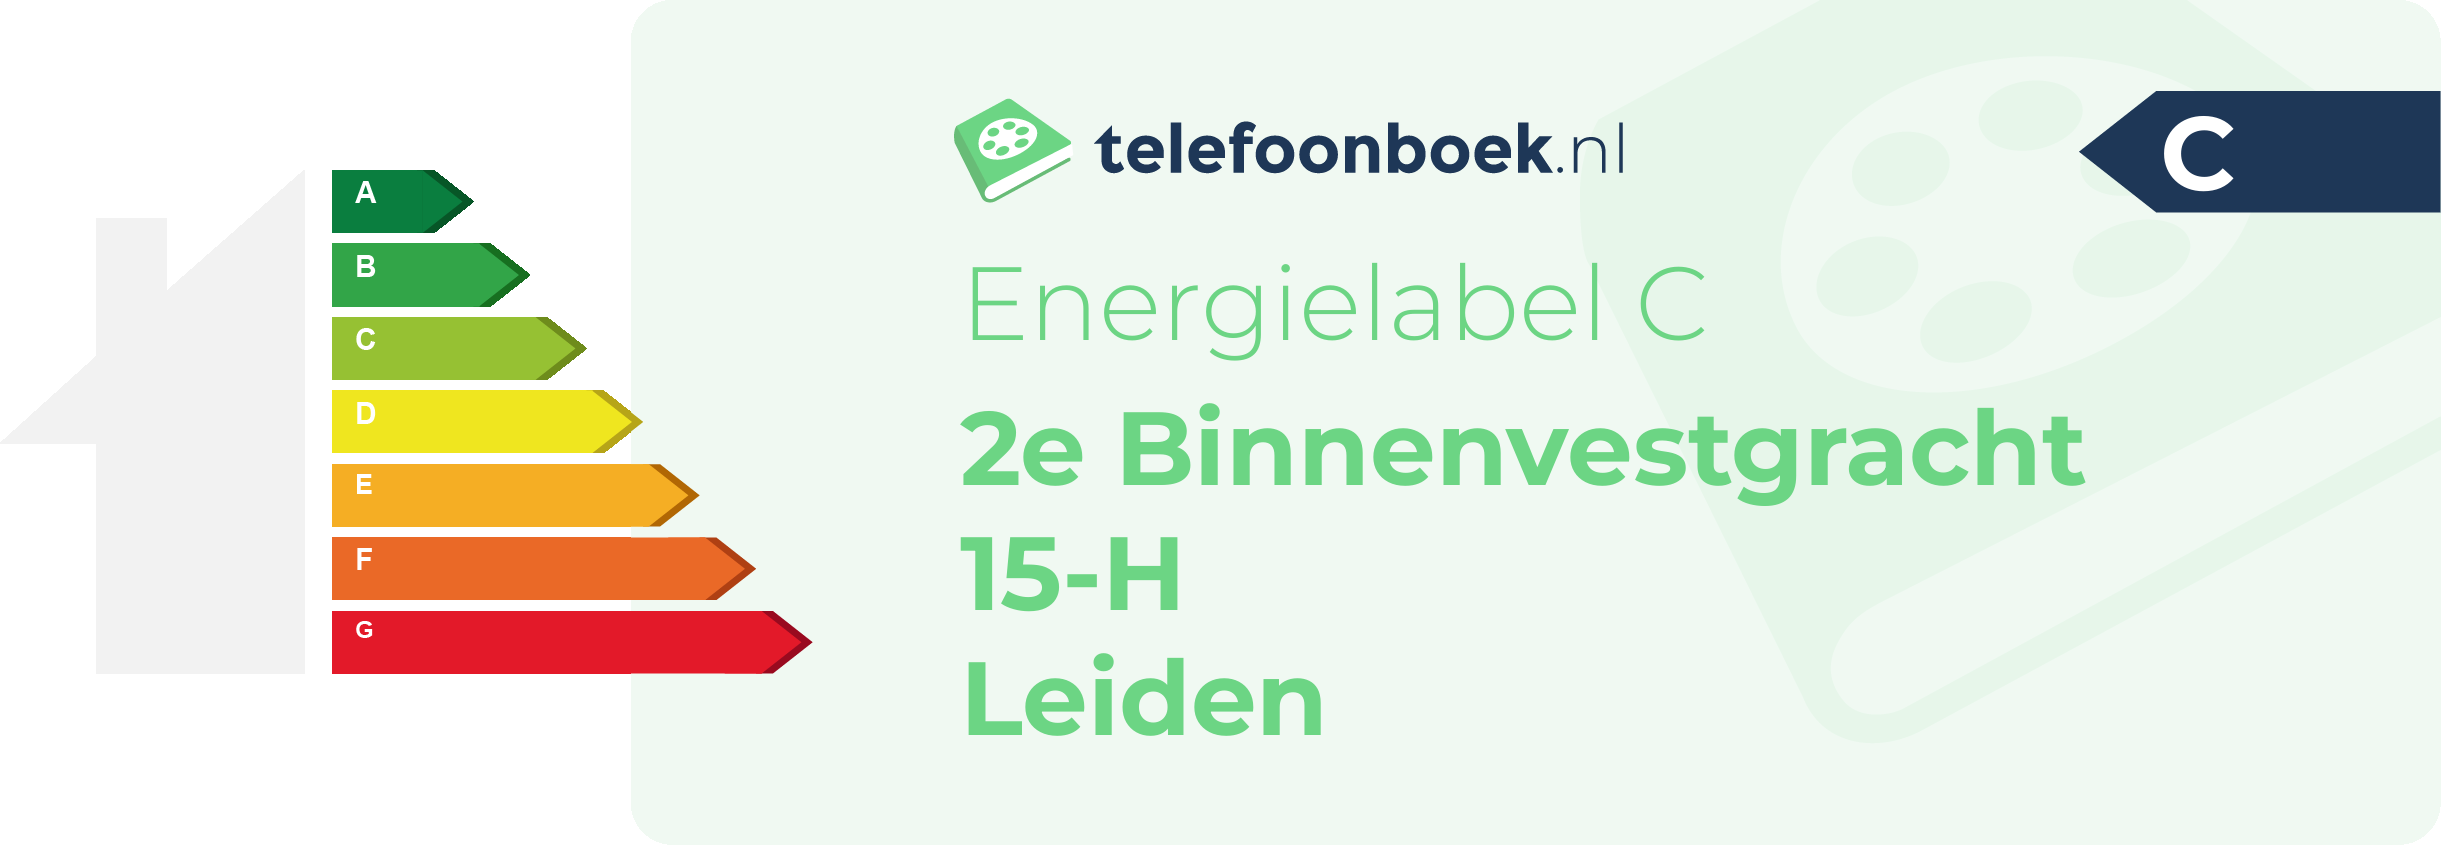 Energielabel 2e Binnenvestgracht 15-H Leiden